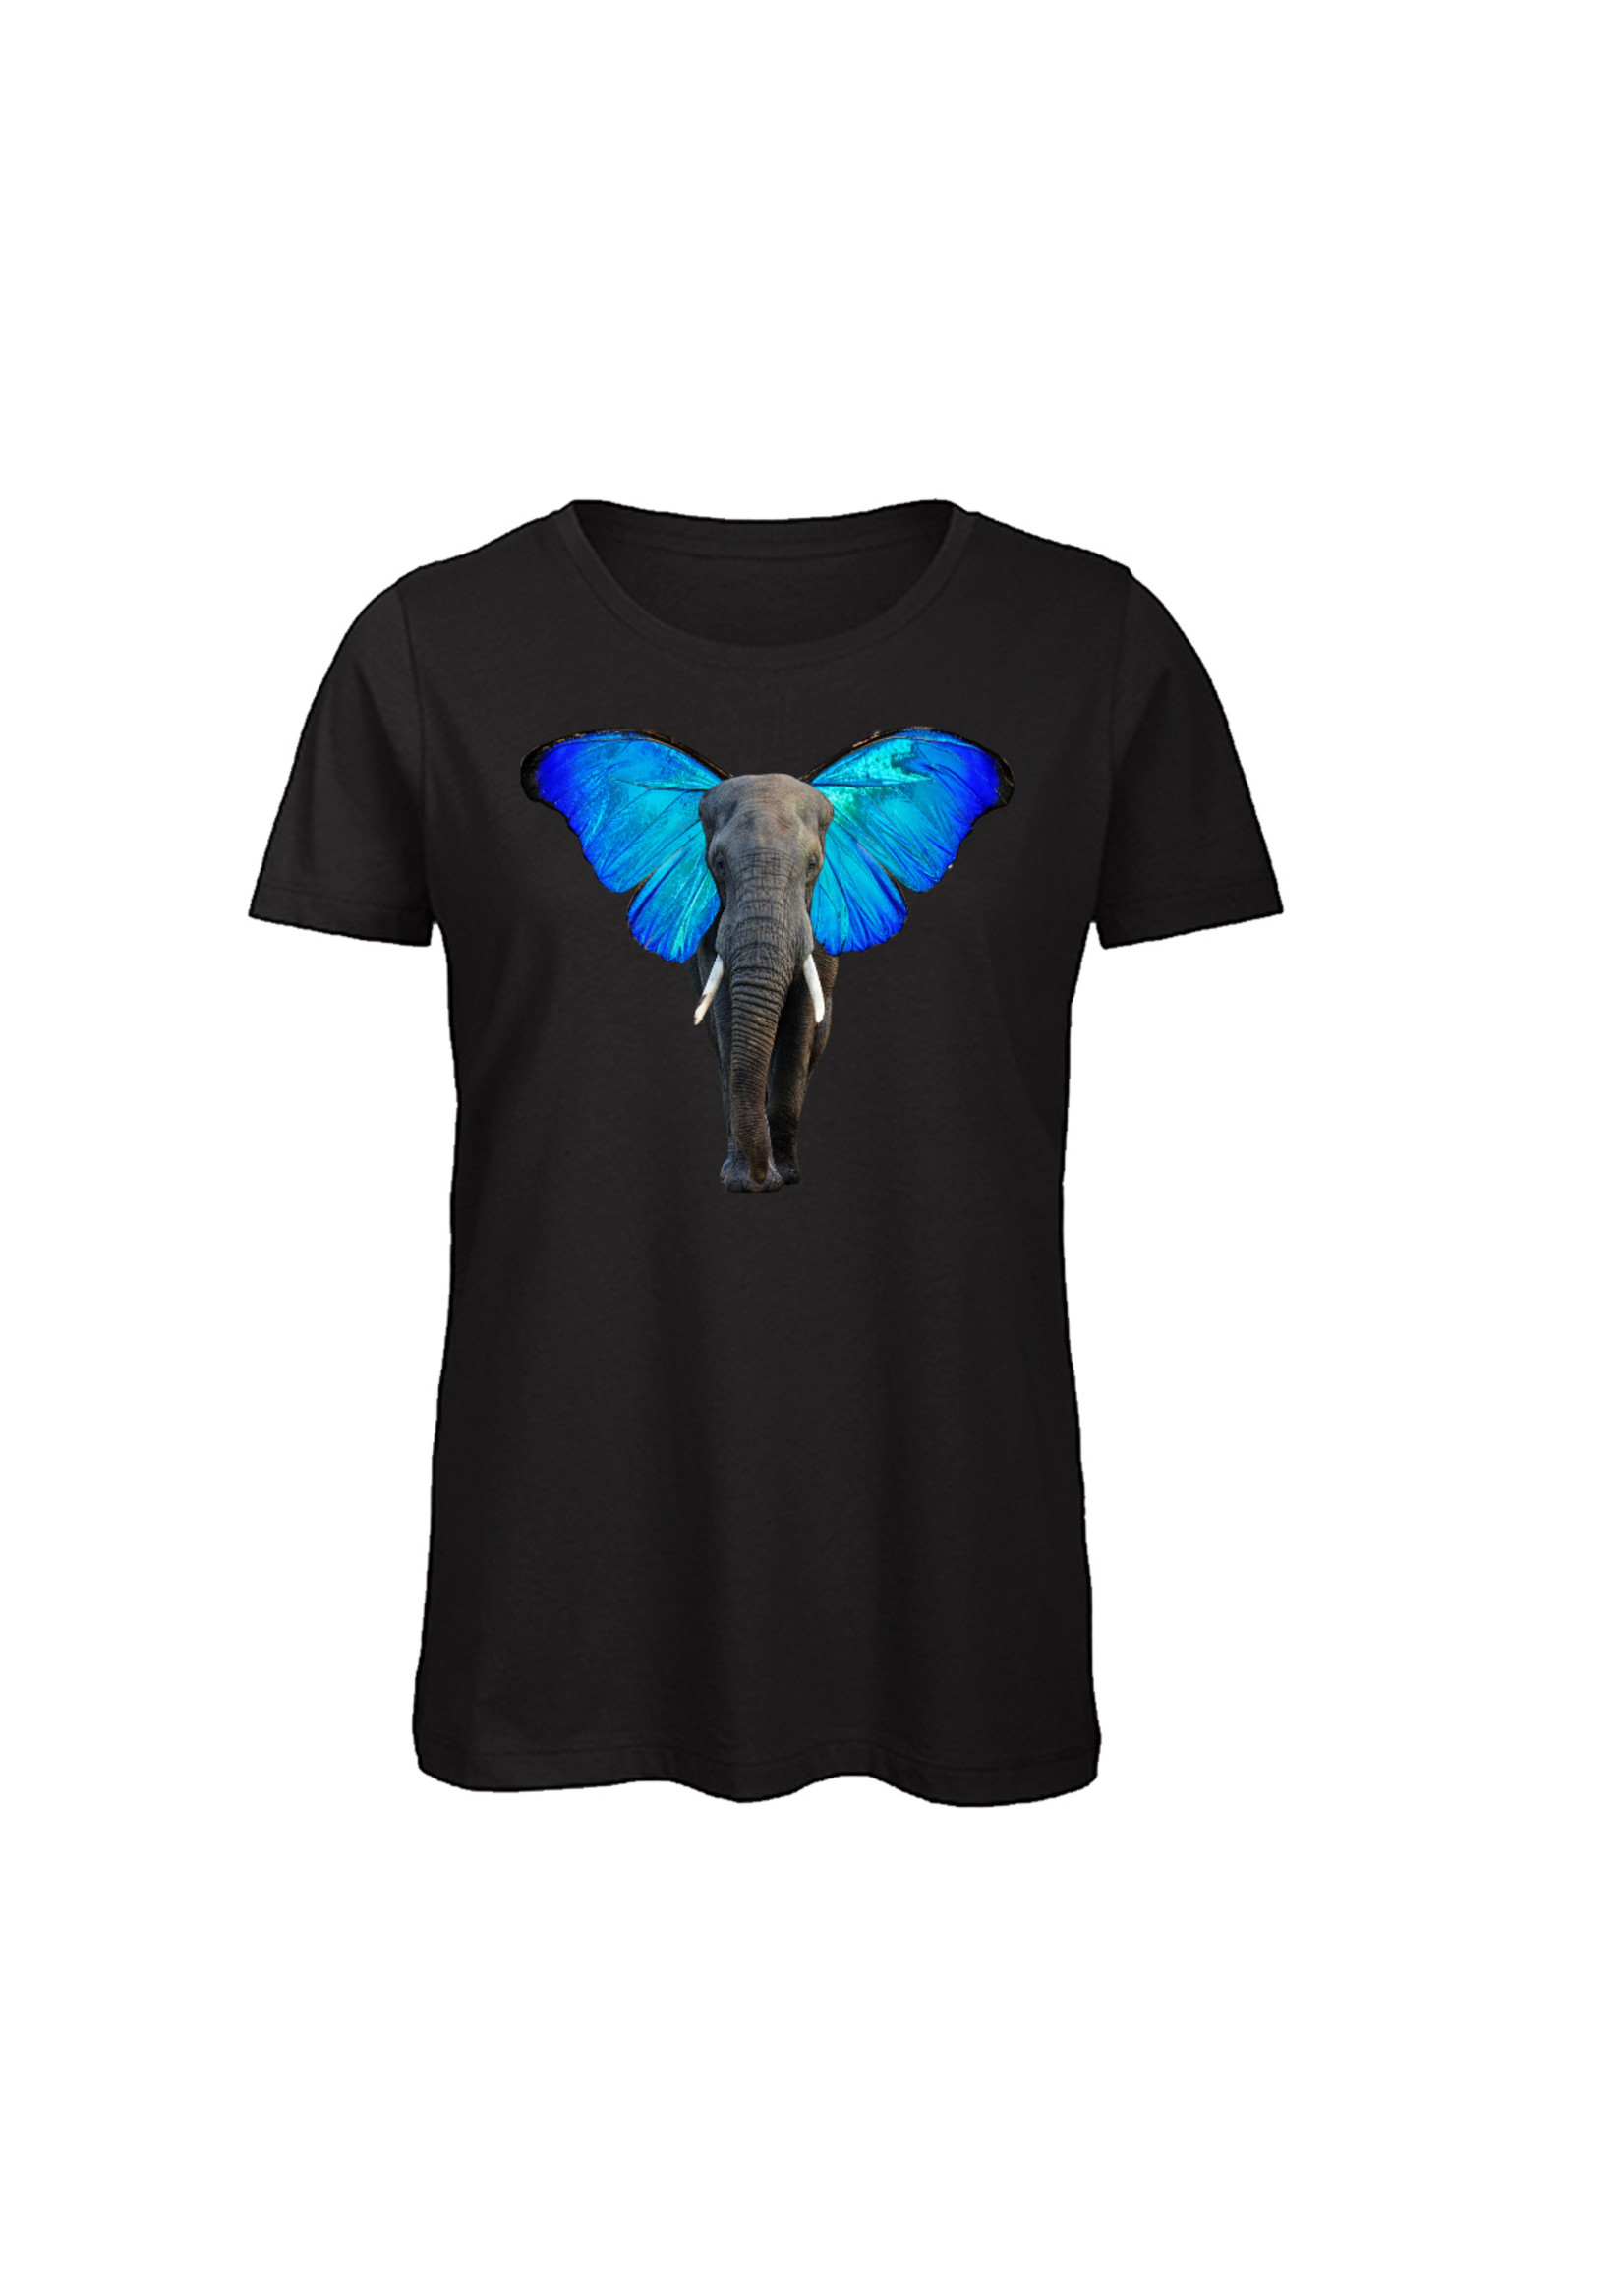 T-shirt olifant met vlinderoren - Uniek en comfortabel